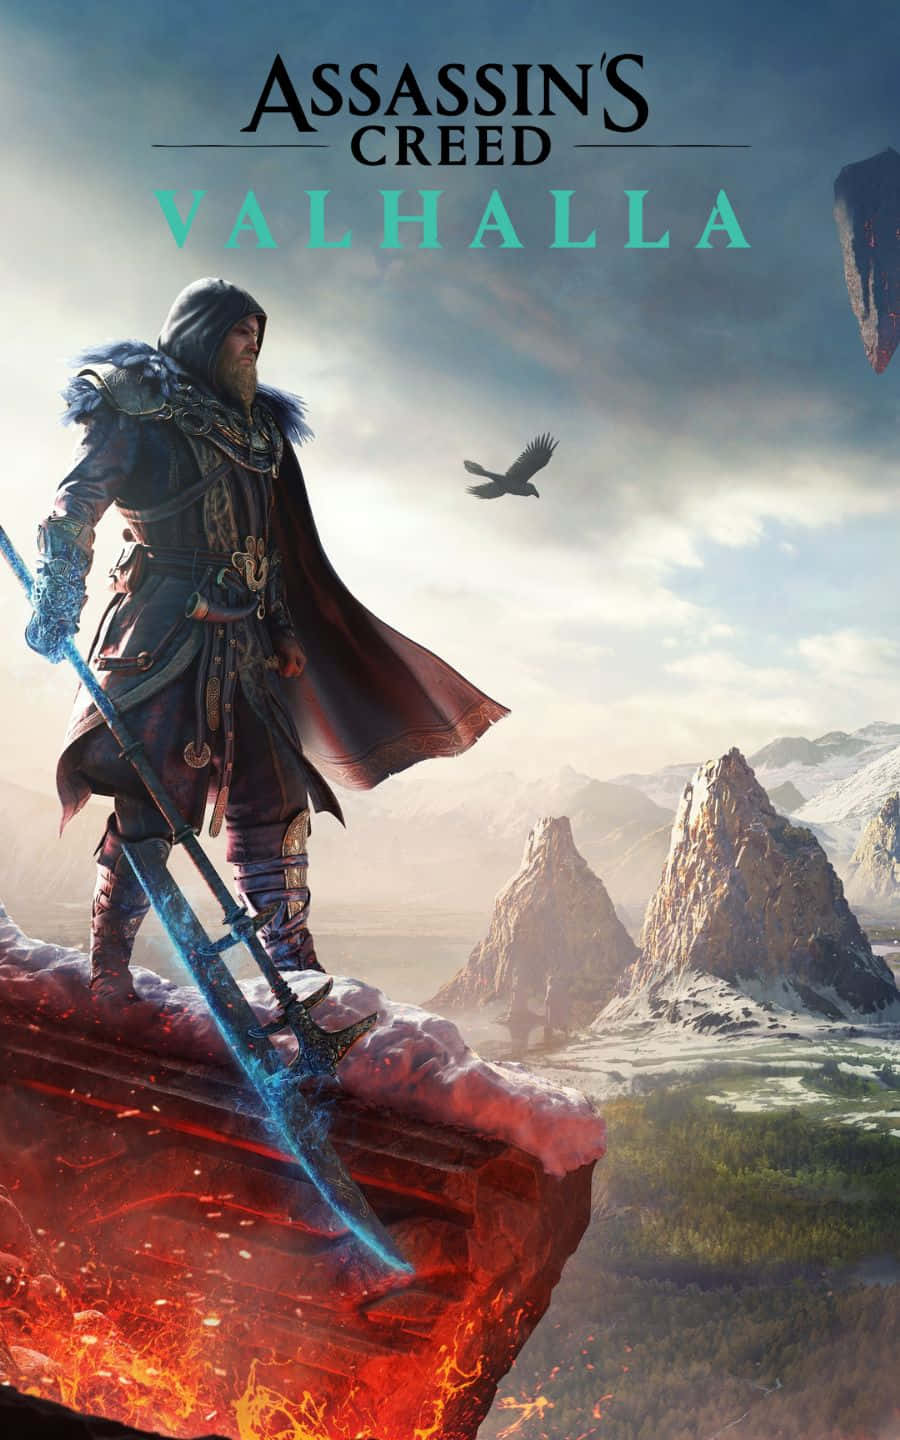 Eivorhält Eine Sense - Assassin's Creed Valhalla Hintergrundbild Mit Einer Auflösung Von 1440p.